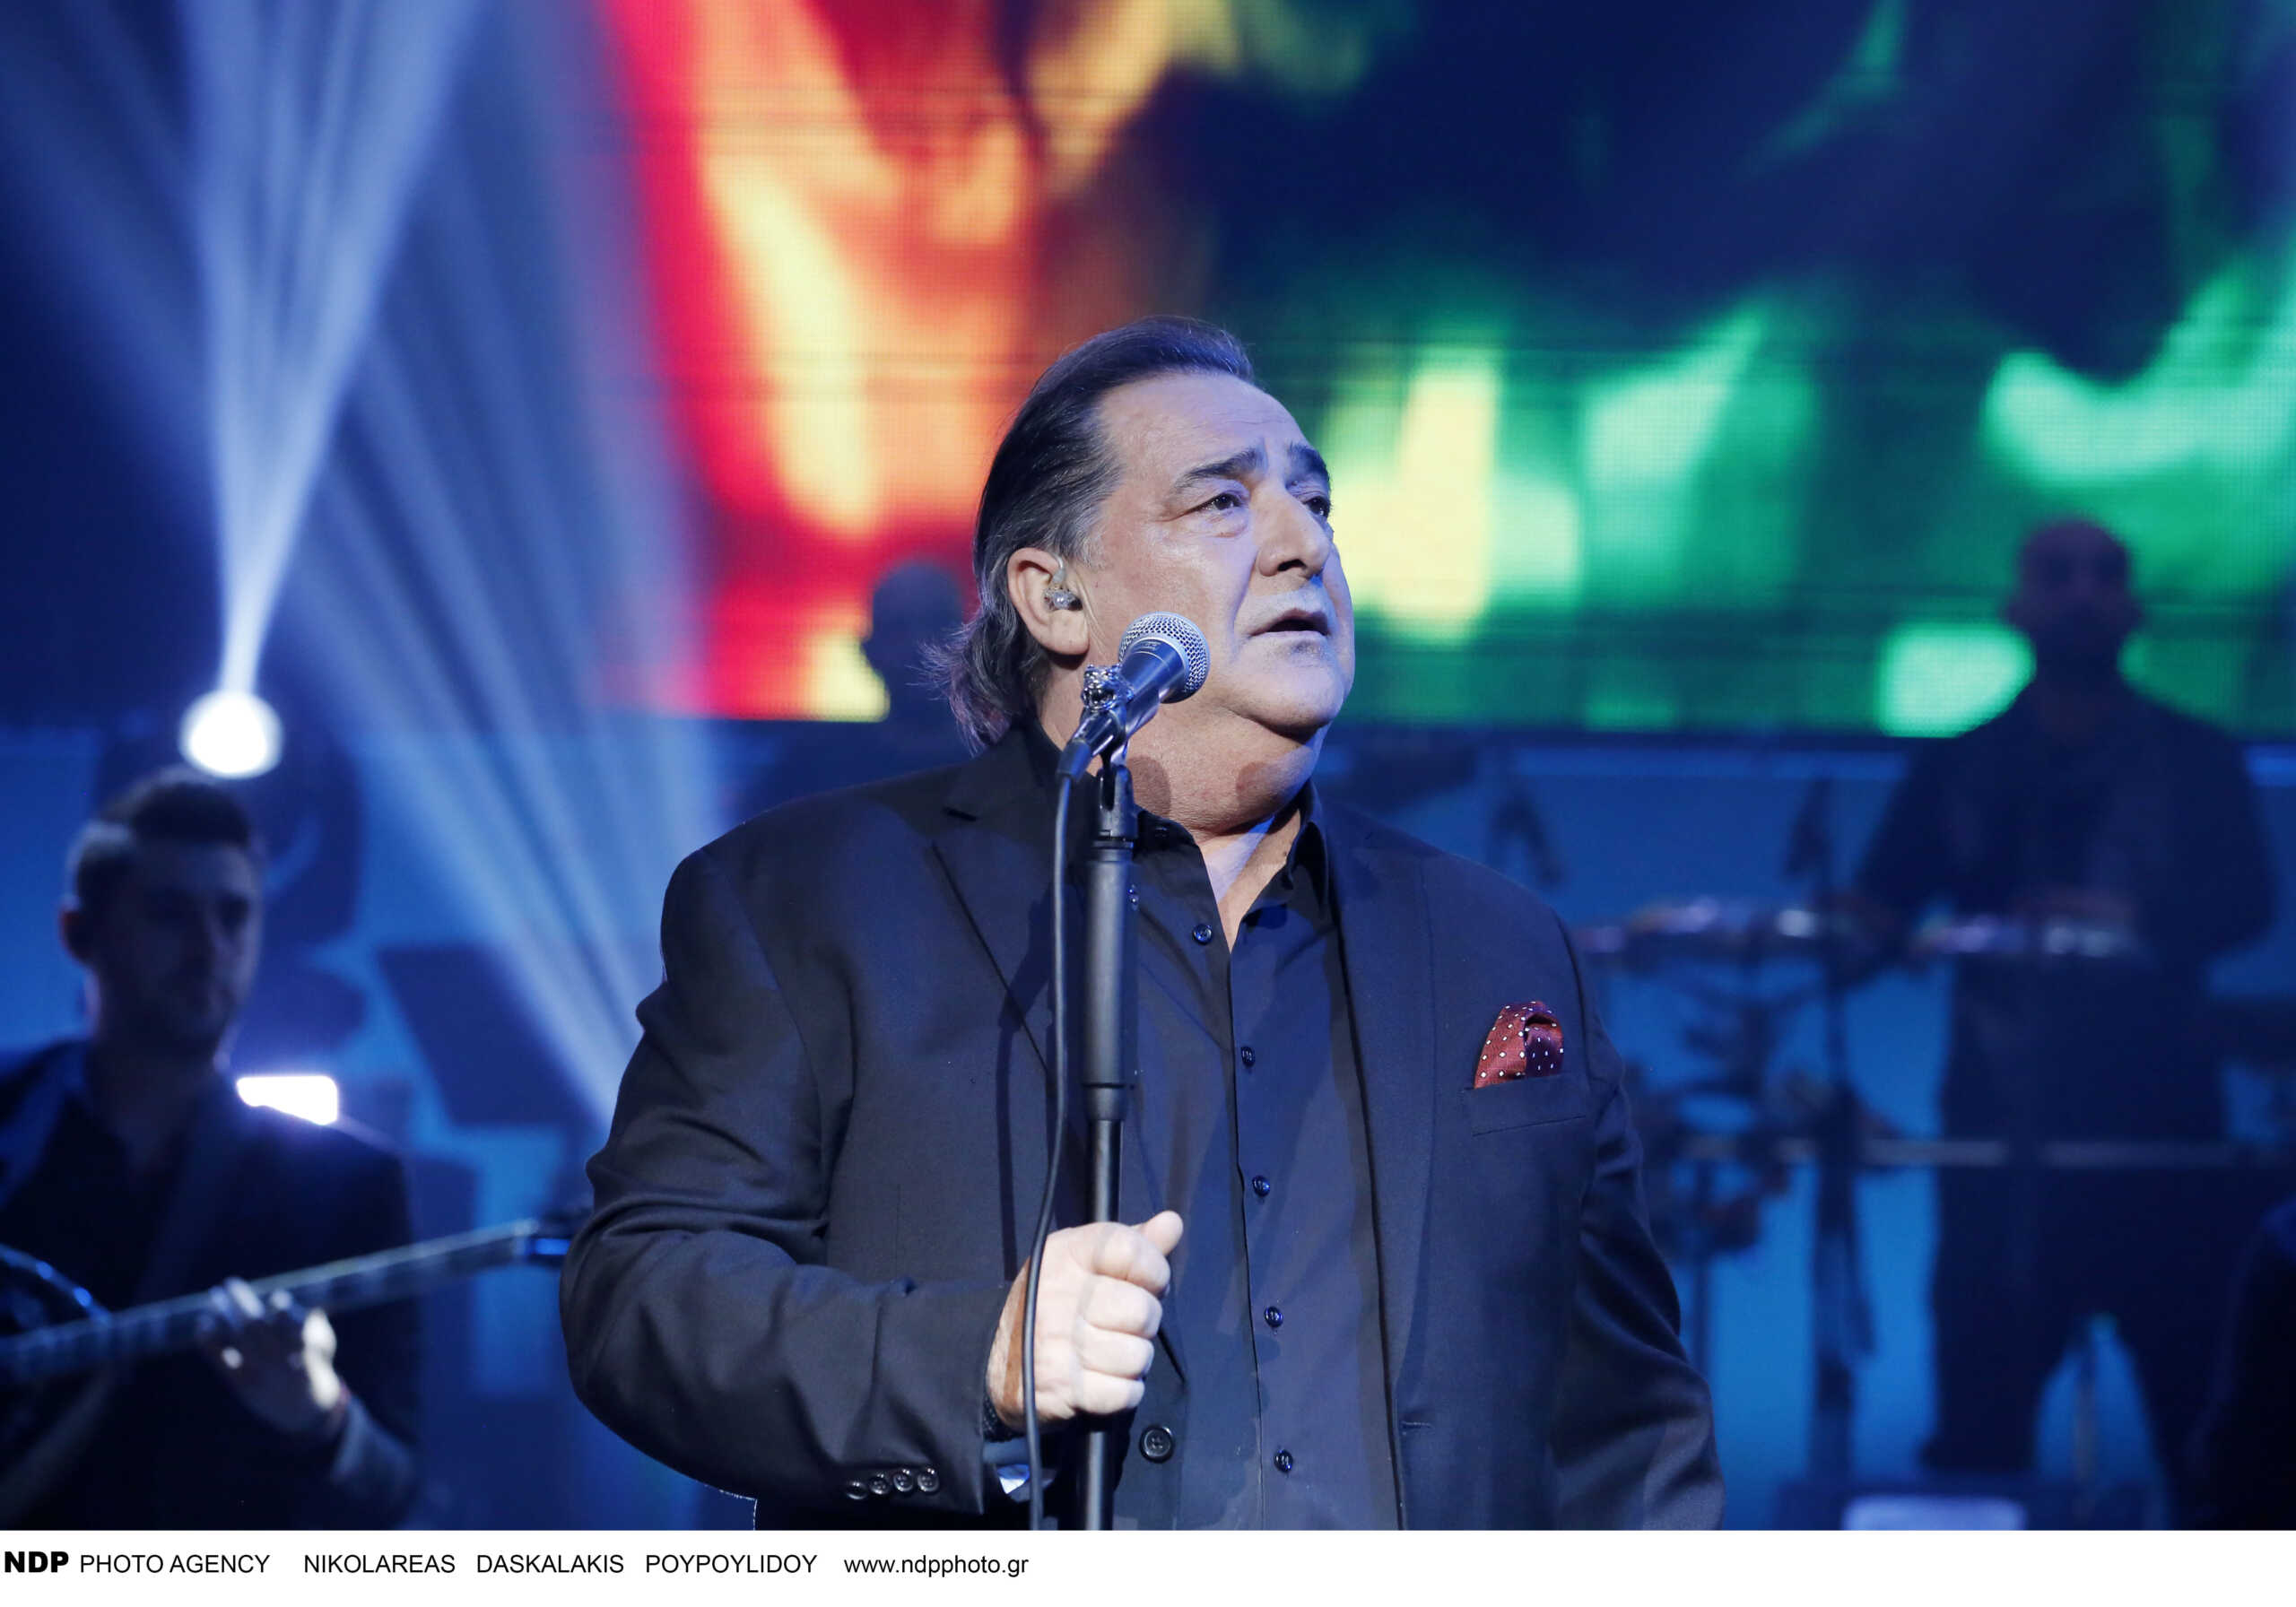 Βασίλης Καρράς: «Απ’ τον Βορρά μέχρι τον Νότο» – Η Θεσσαλονίκη αποχαιρετά τον κορυφαίο λαϊκό τραγουδιστή